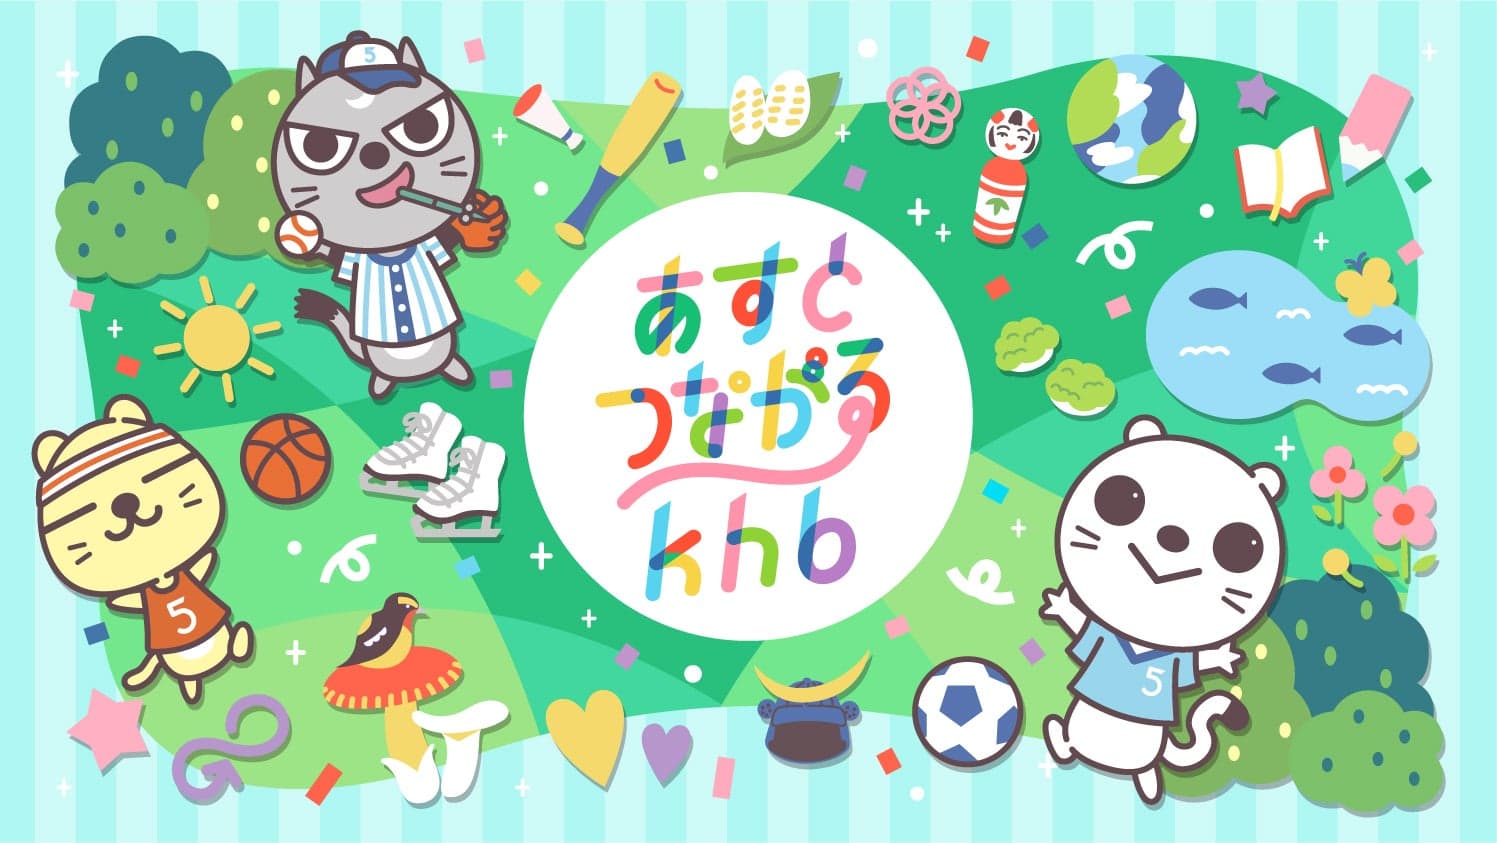 khb東日本放送×乃村工藝社 IVD 　「あすとつながるkhb」「khbこどもの笑顔を広げようキャンペーン」　乃村工藝社 IVDが、クリエイティブ プロデュースを行いました